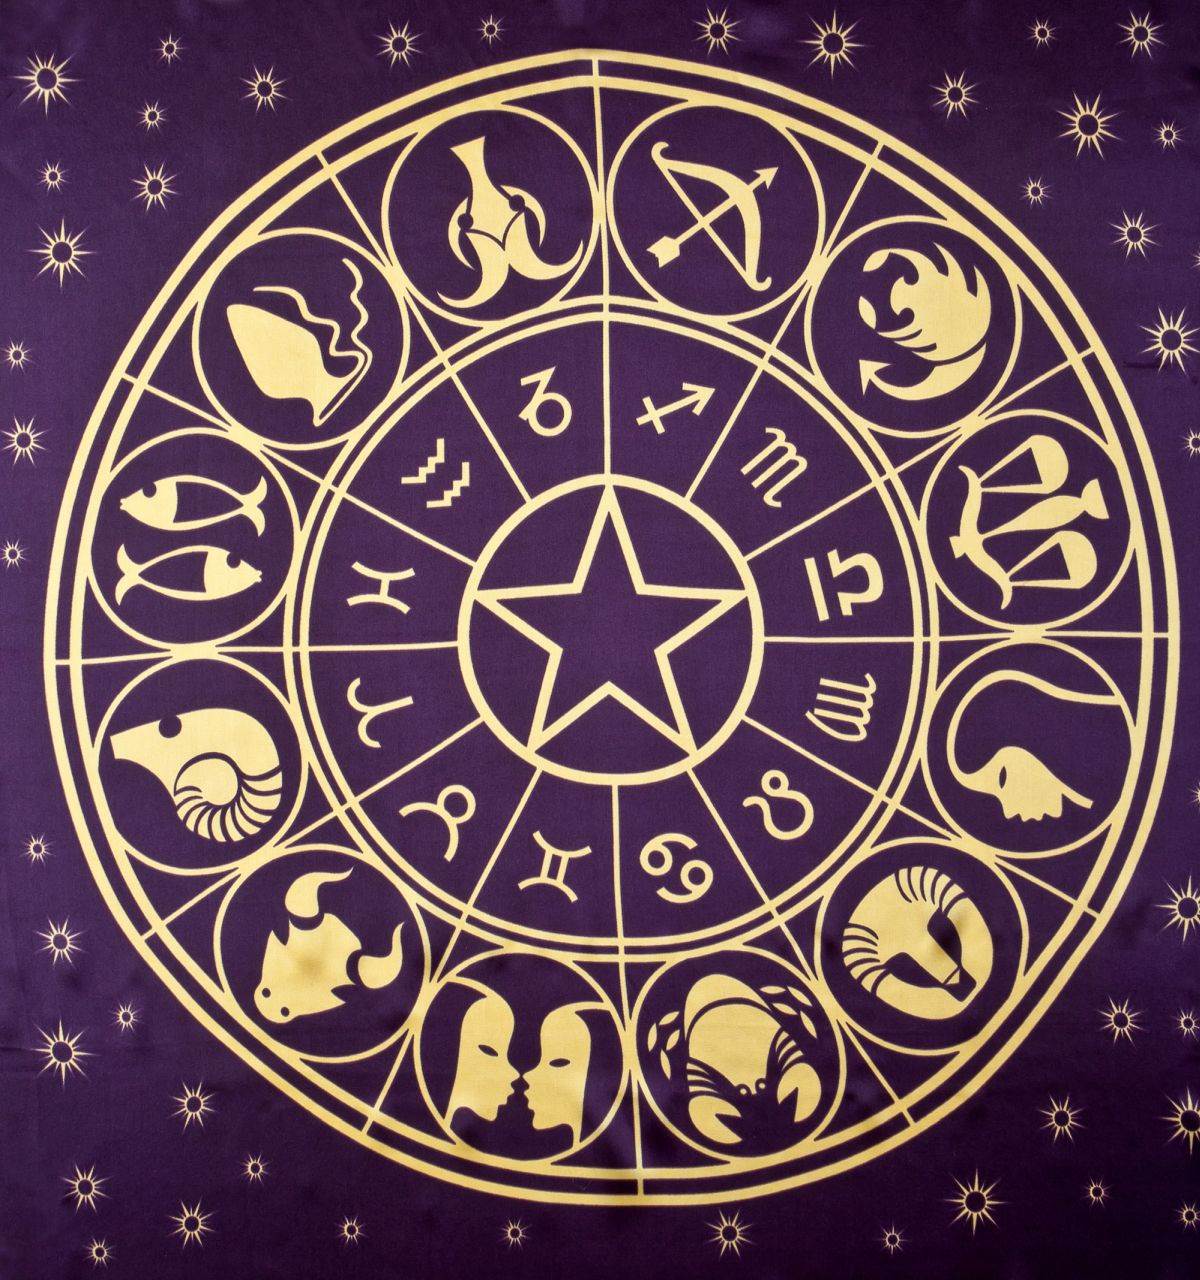  dnevni horoskop za 9. februar 